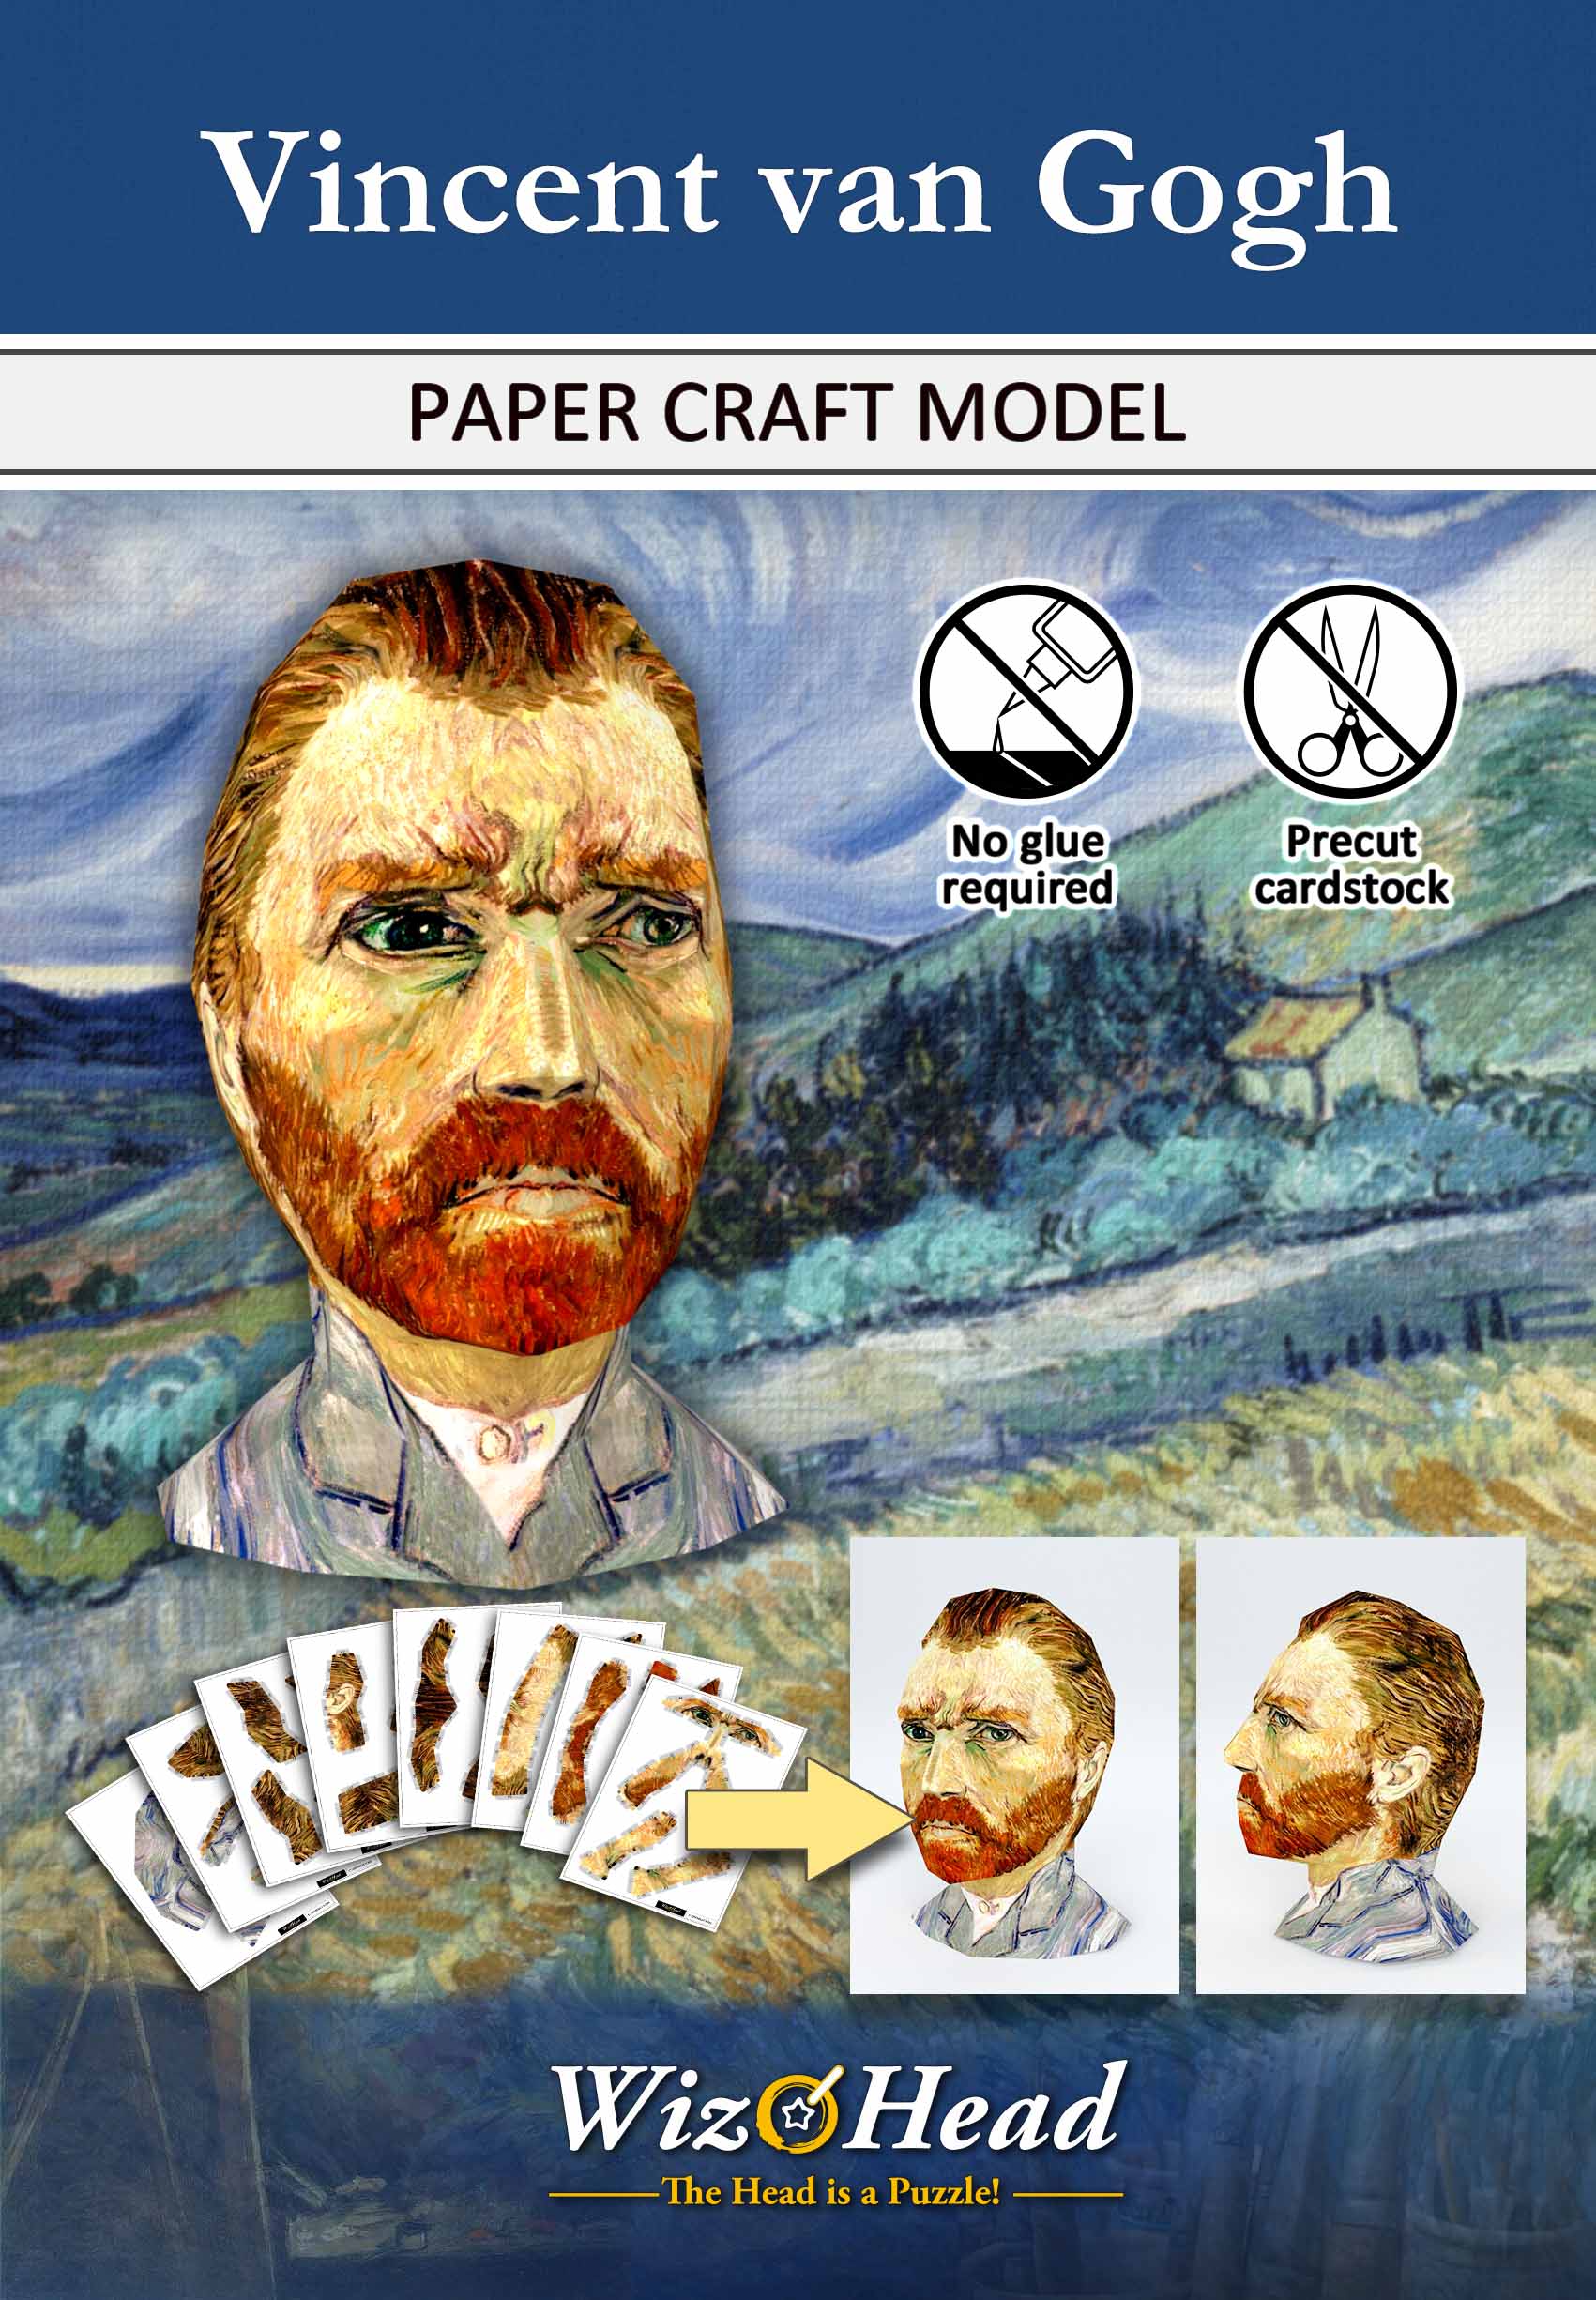 Vincent van Gogh (Full Size)